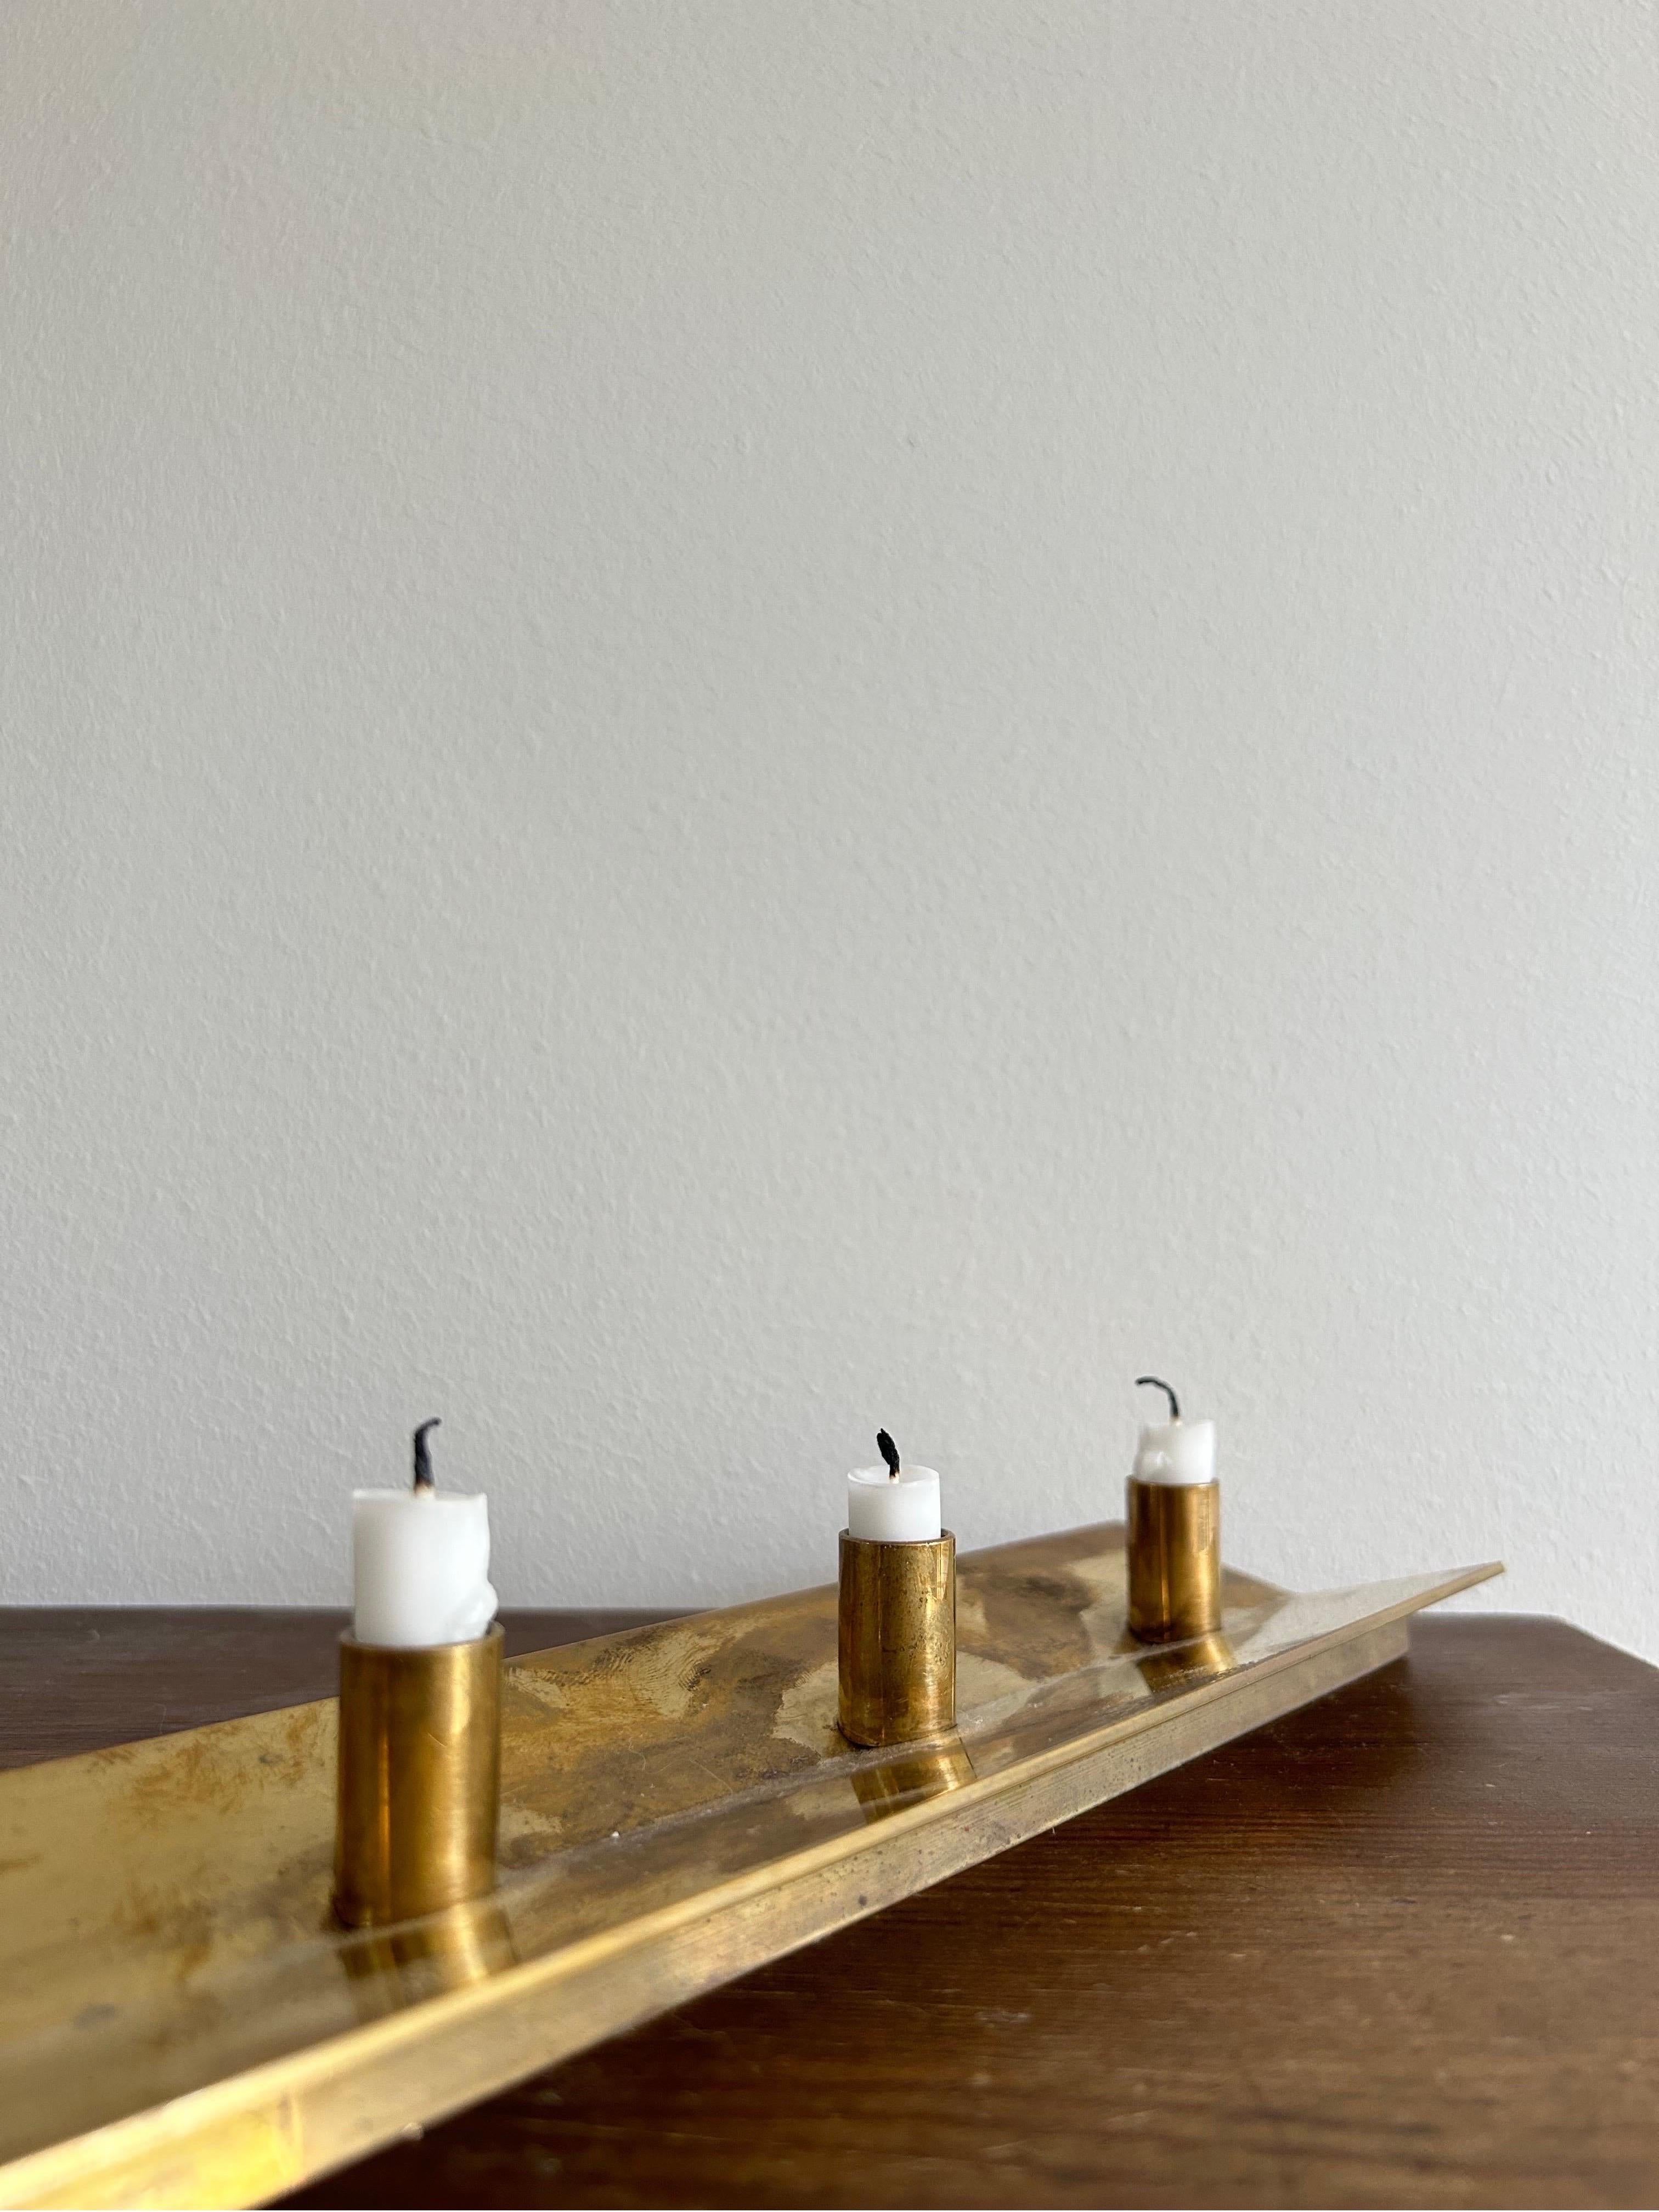 Pierre Forsell Model 69 Kerzenleuchter aus Messing, ein verehrtes Stück, das von Skultuna in den 1990er Jahren hergestellt wurde. Dieser von dem bekannten schwedischen Künstler Pierre Forsell entworfene Kerzenständer ist ein Beispiel für